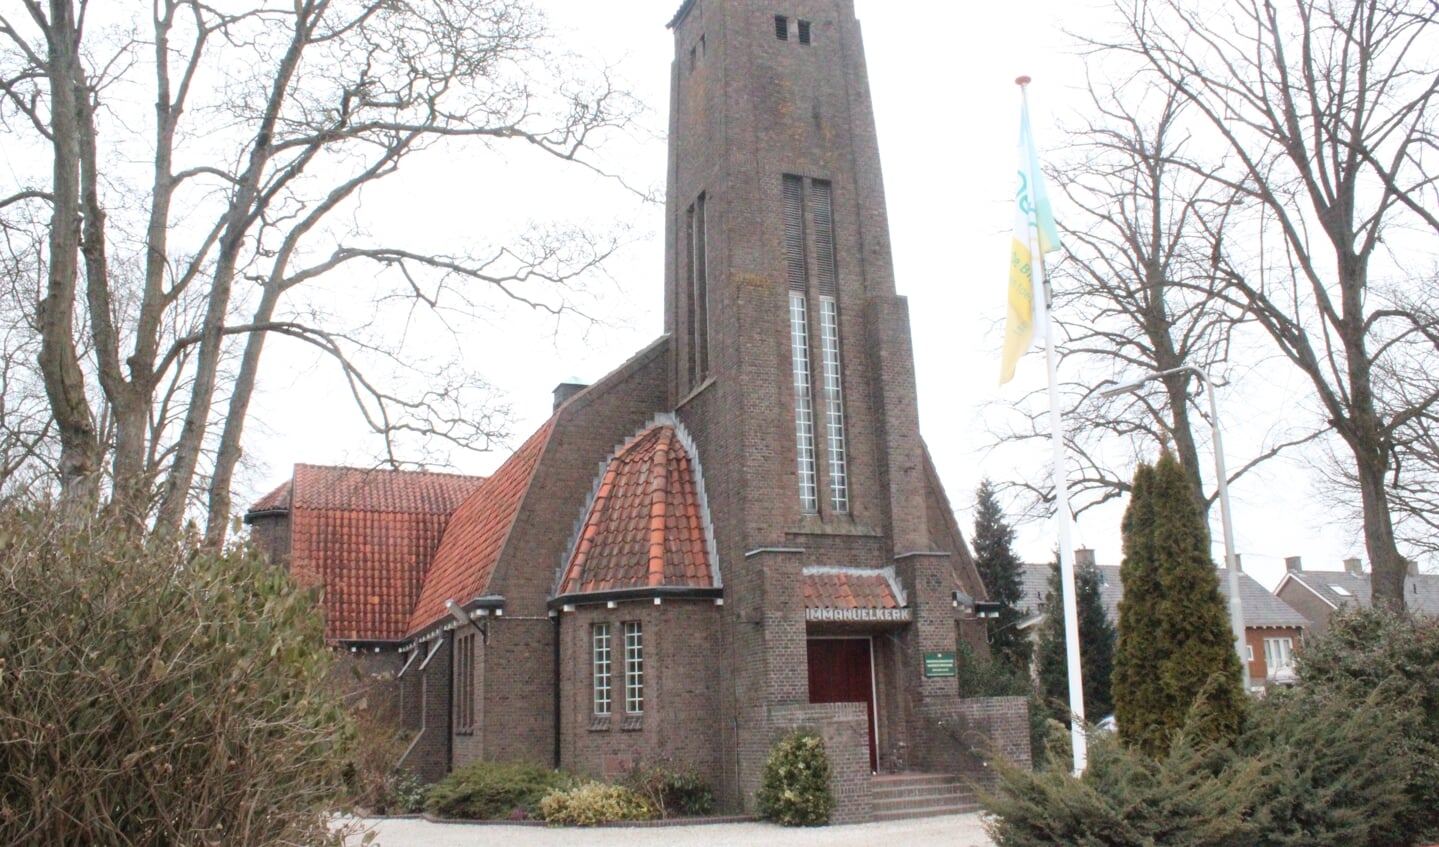 De Immanuelkerk is een van de locaties van HiStories.